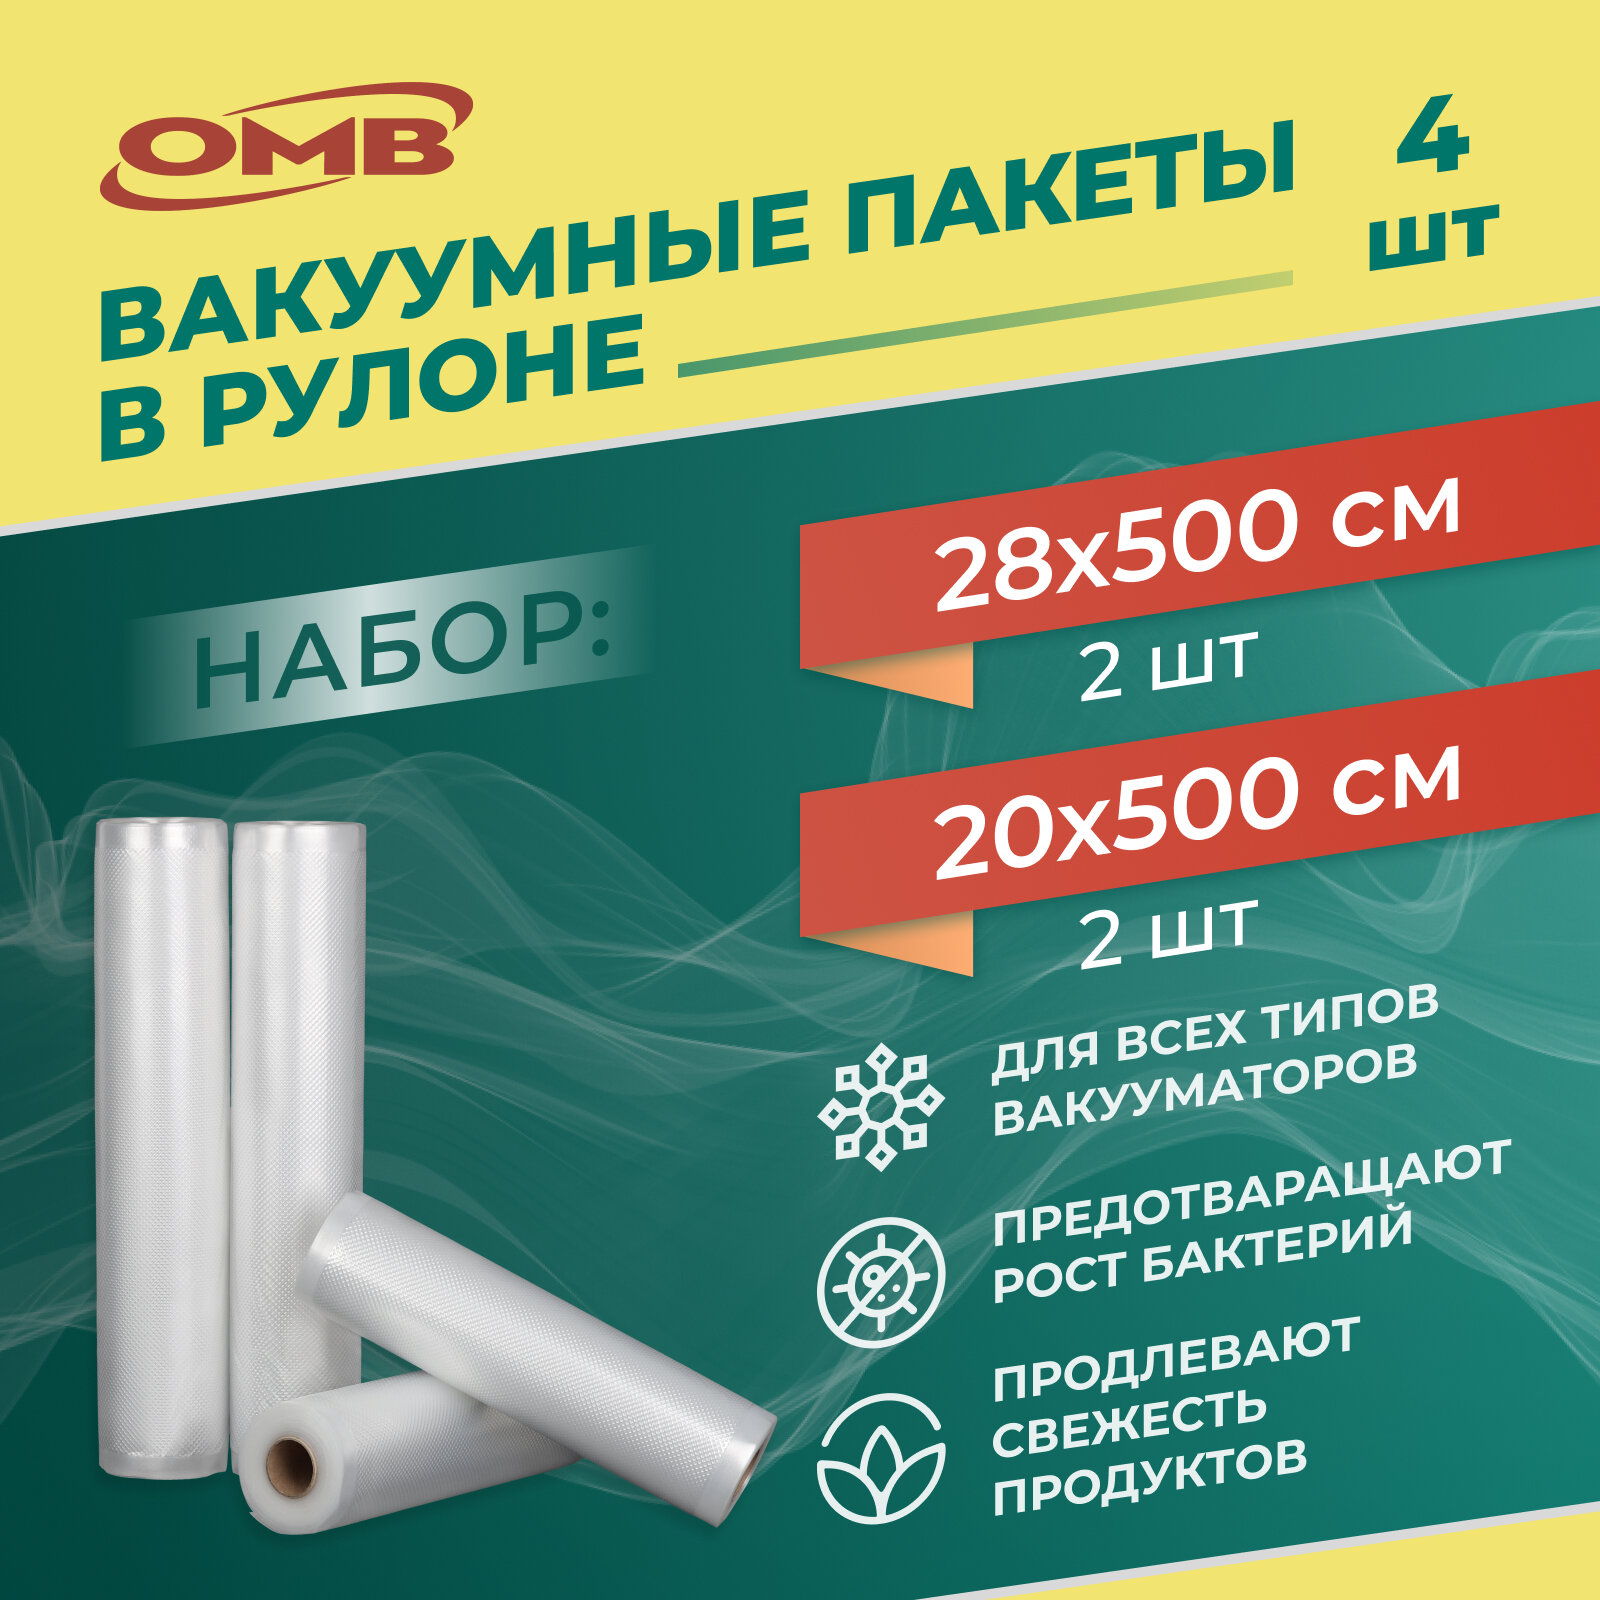 Вакуумные рулоны OMB шириной 20 см/2шт. и 28 см/2шт. 5 метров длиной. Комплект.